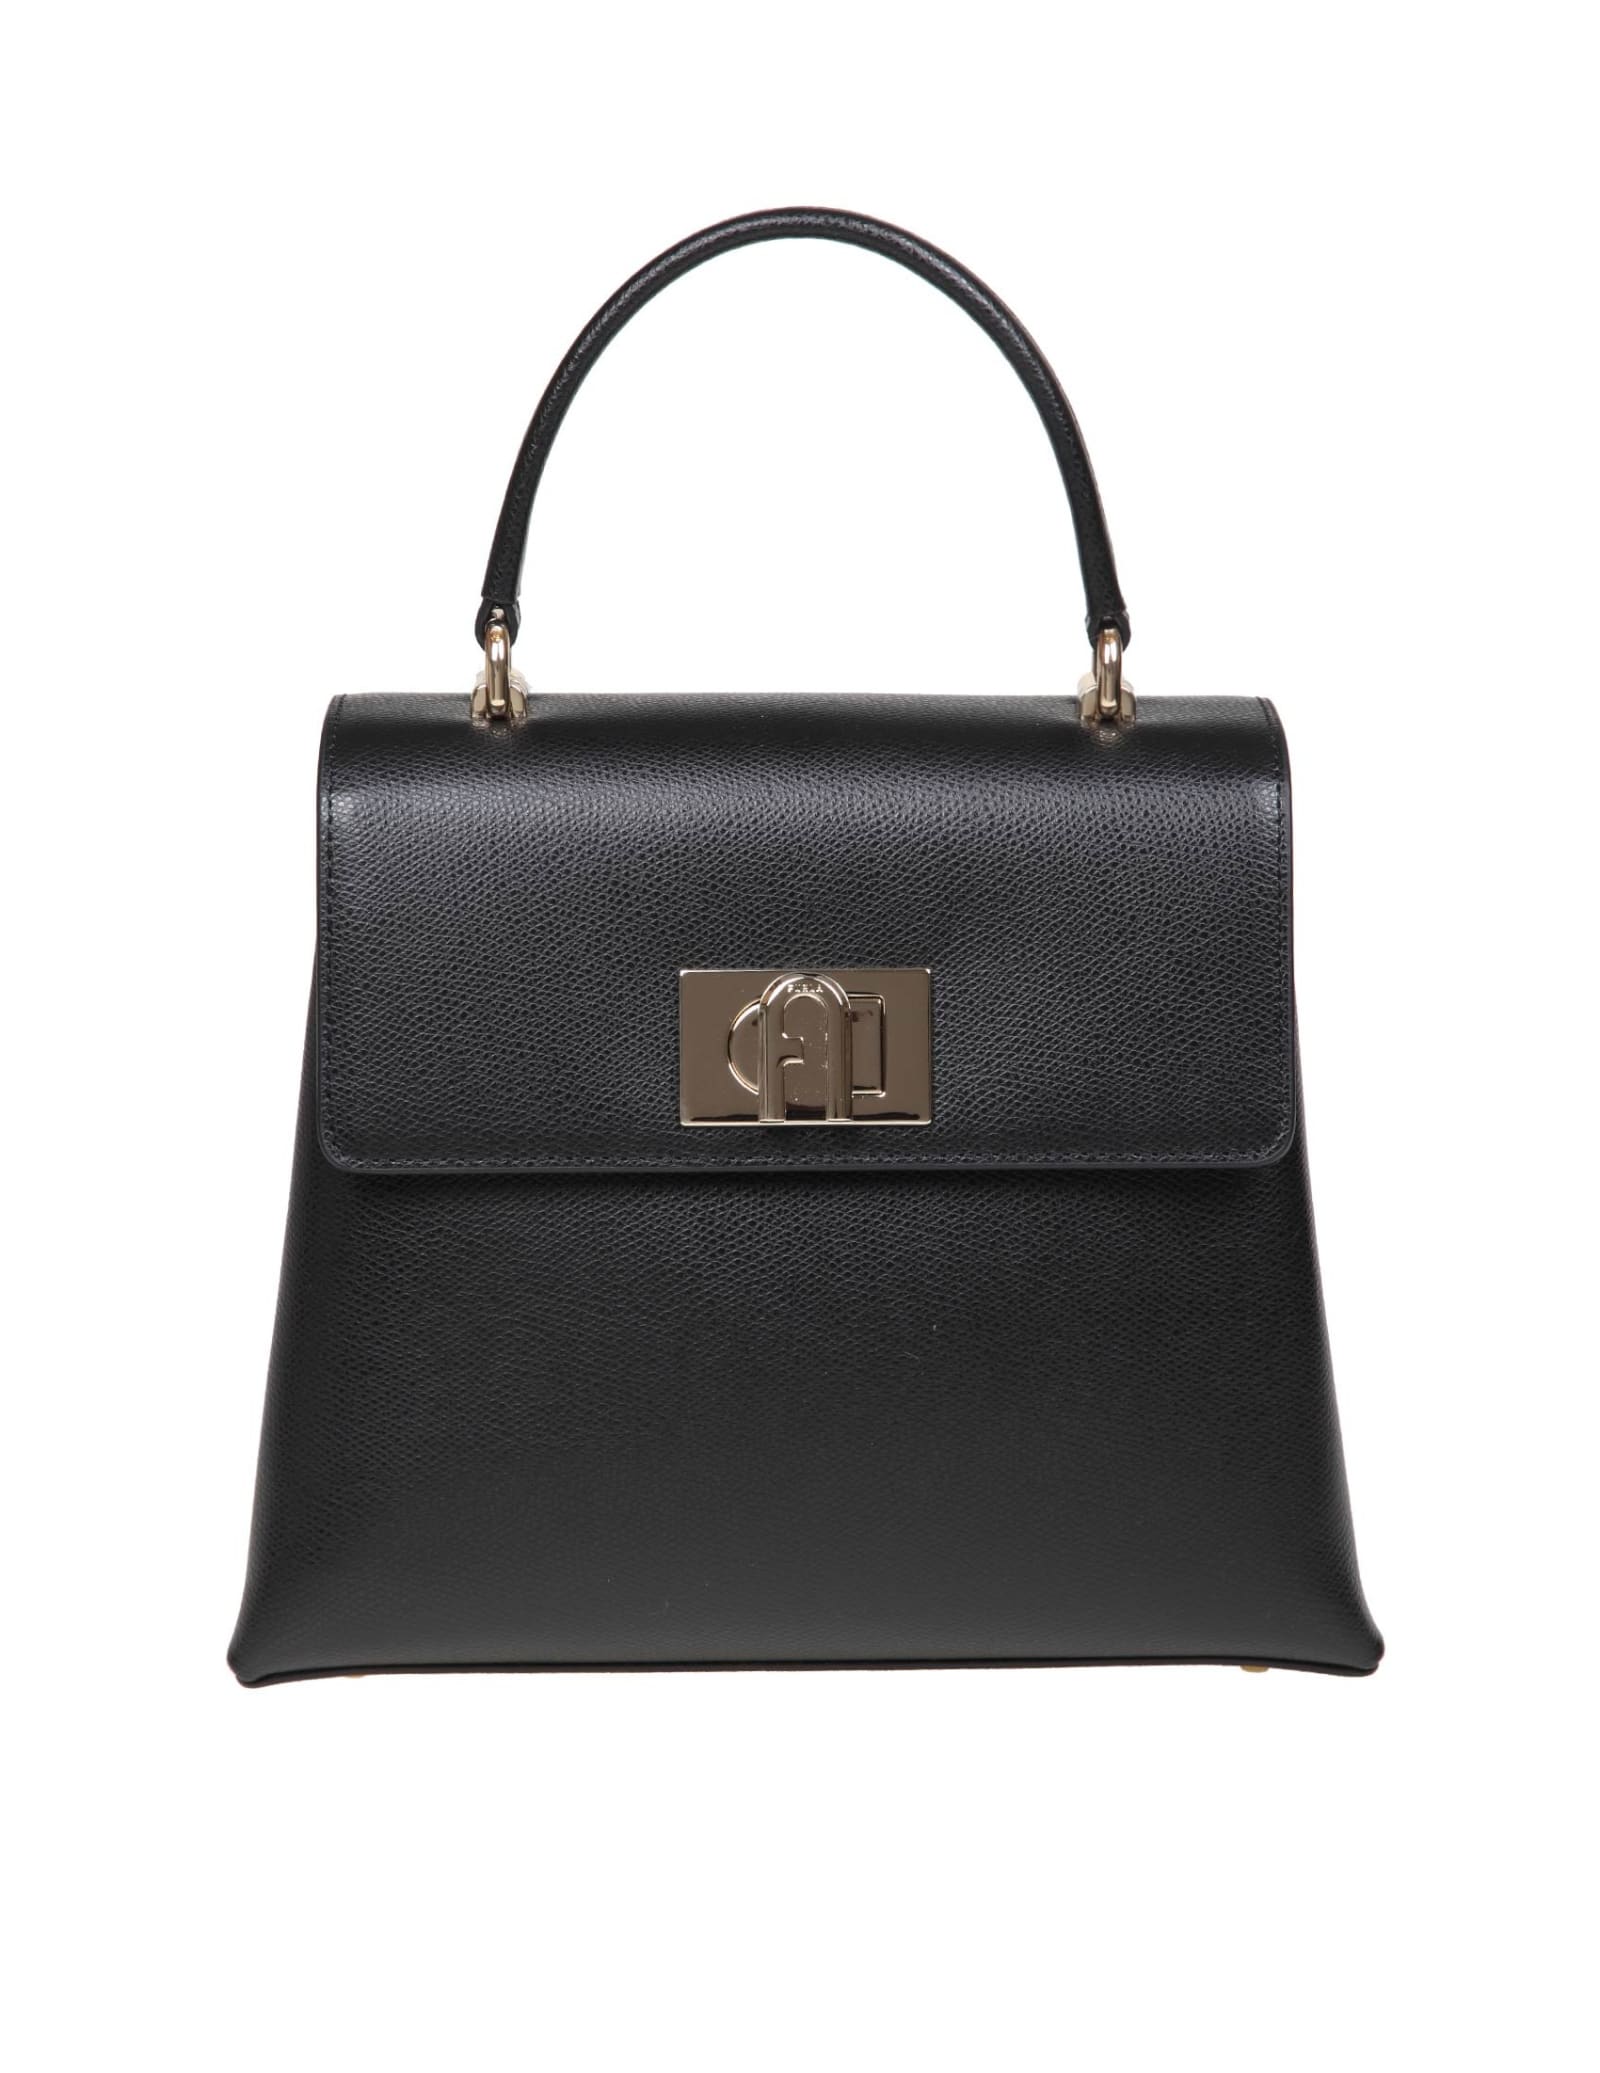 Furla 1927 Handbag In Black Color Leather